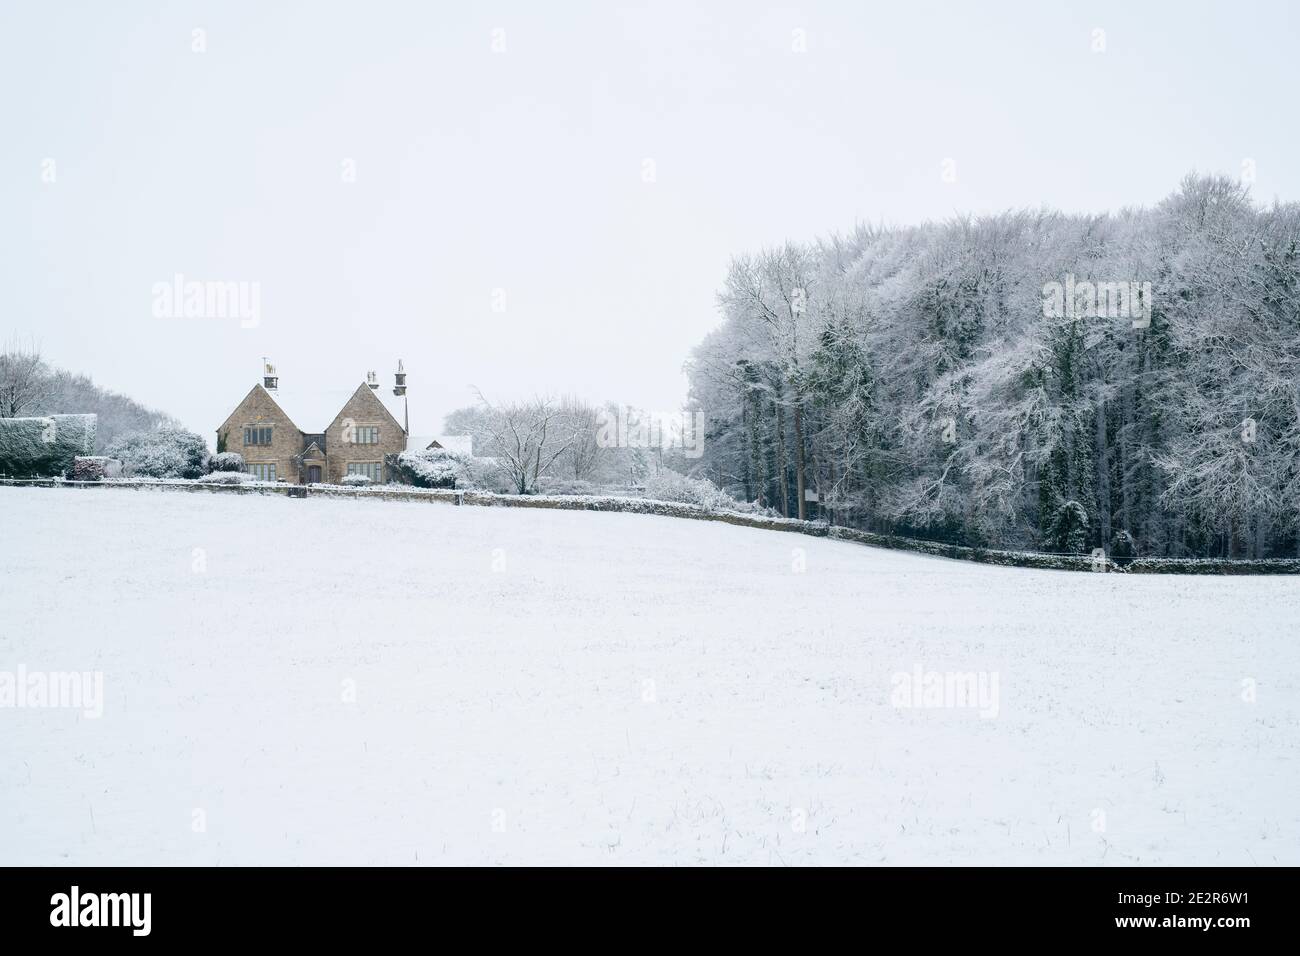 Maison en pierre de Cotswold, arbres et champ dans la neige de décembre dans la campagne de cotswold. Près de Upper Slaughter, Cotswolds, Gloucestershire, Angleterre Banque D'Images